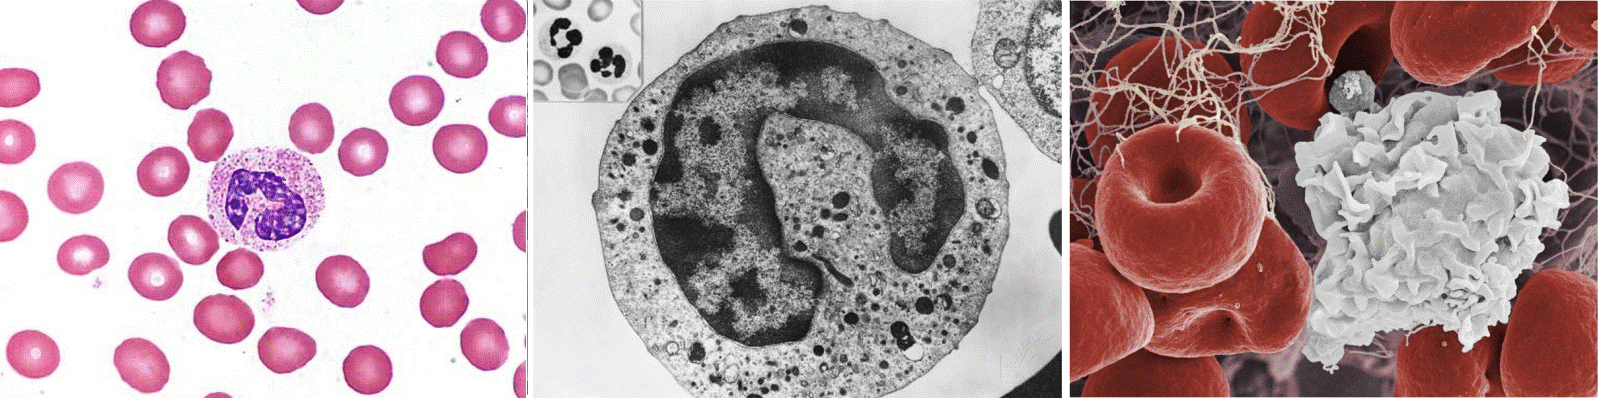 Imagens vistas por diferentes tipos de microscópio